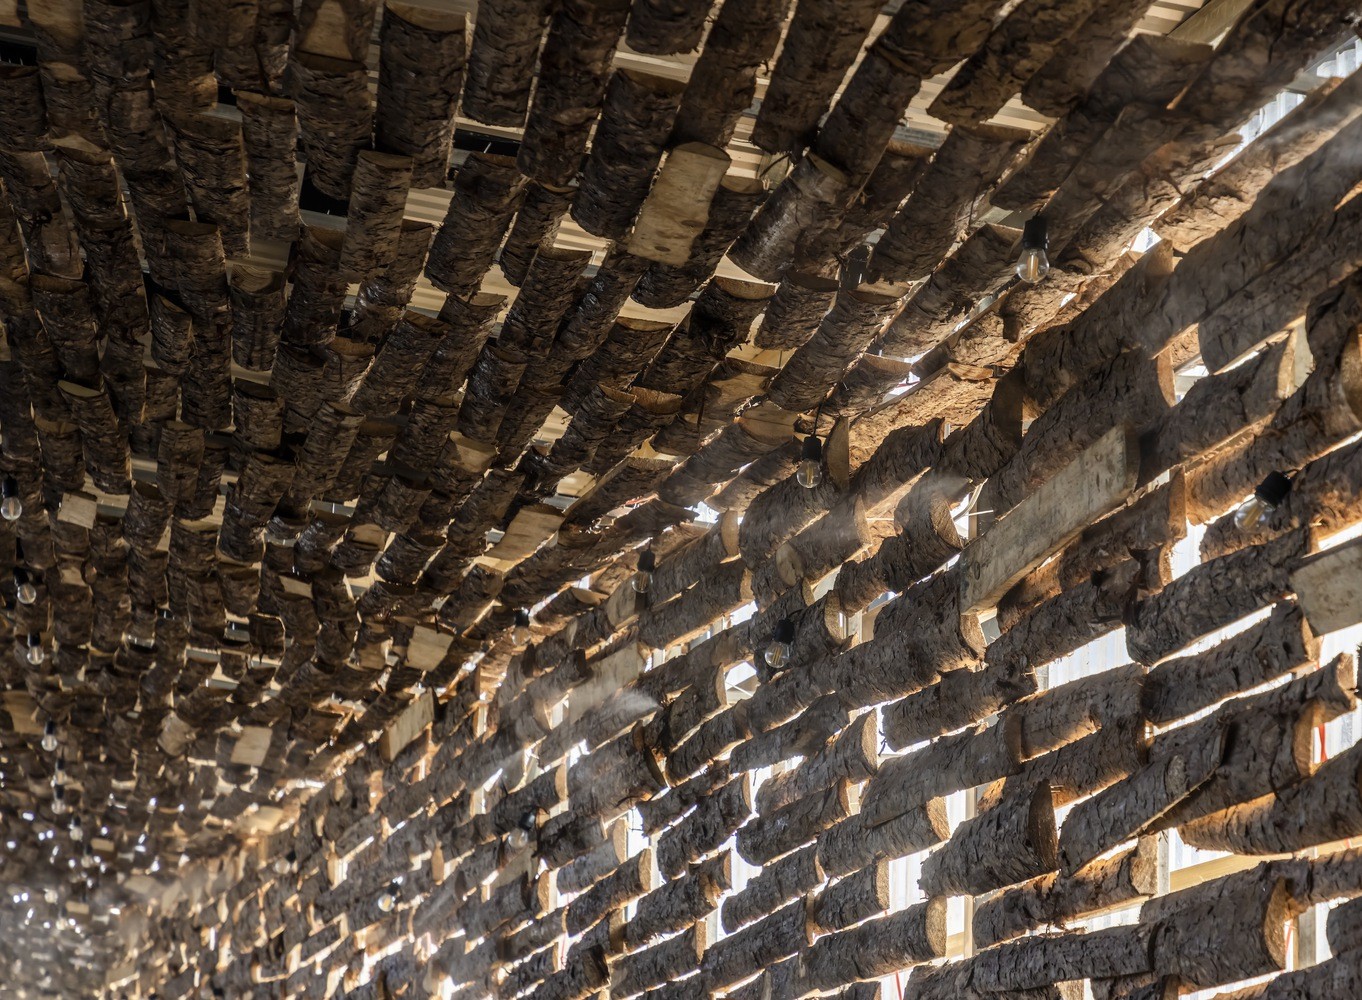 Chiêm ngưỡng nhà hàng dùng nghìn thanh gỗ làm mái được báo nước ngoài đưa tin - Ảnh 5.